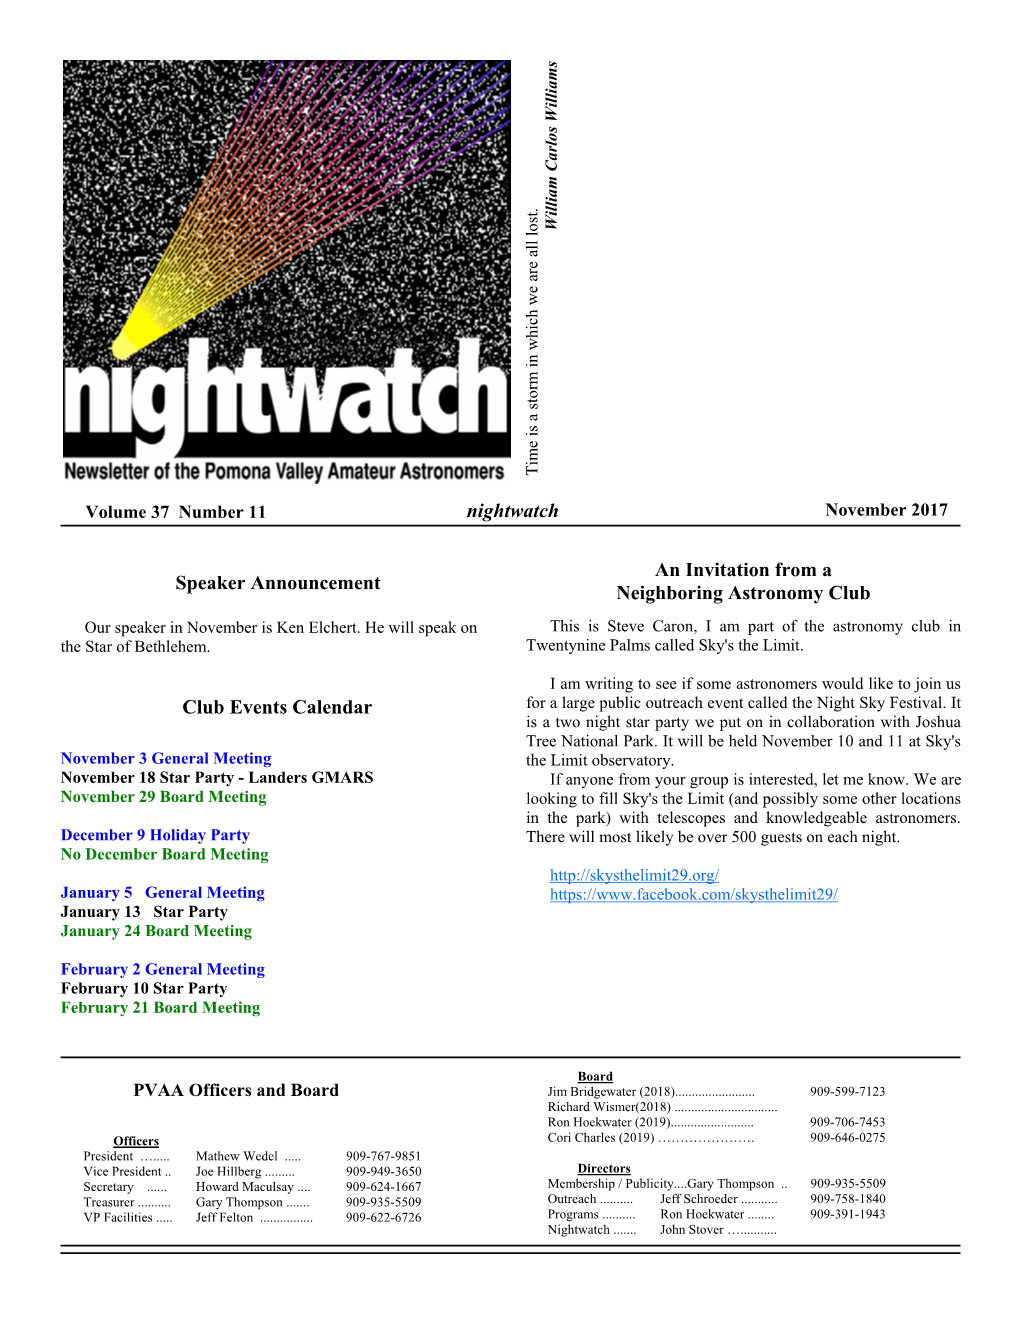 Nightwatch Club Events Calendar Speaker Announcement An